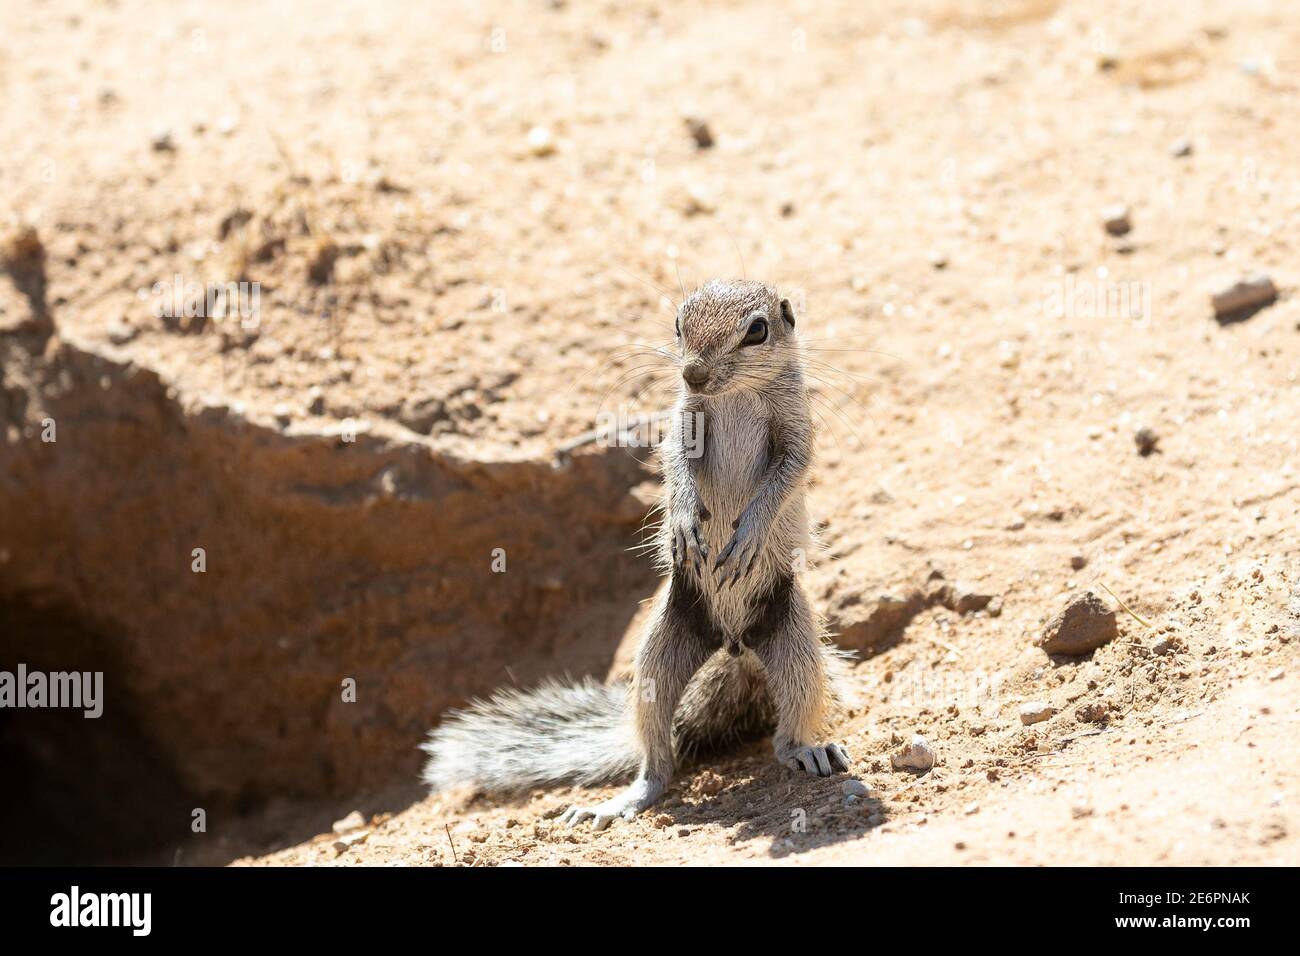 Baby Cape / South African Ground Squirrel (Xerus inauris) Parc transfrontalier de Kgalagadi à l'entrée des terriers, Kalahari, Cap Nord, Afrique du Sud Banque D'Images